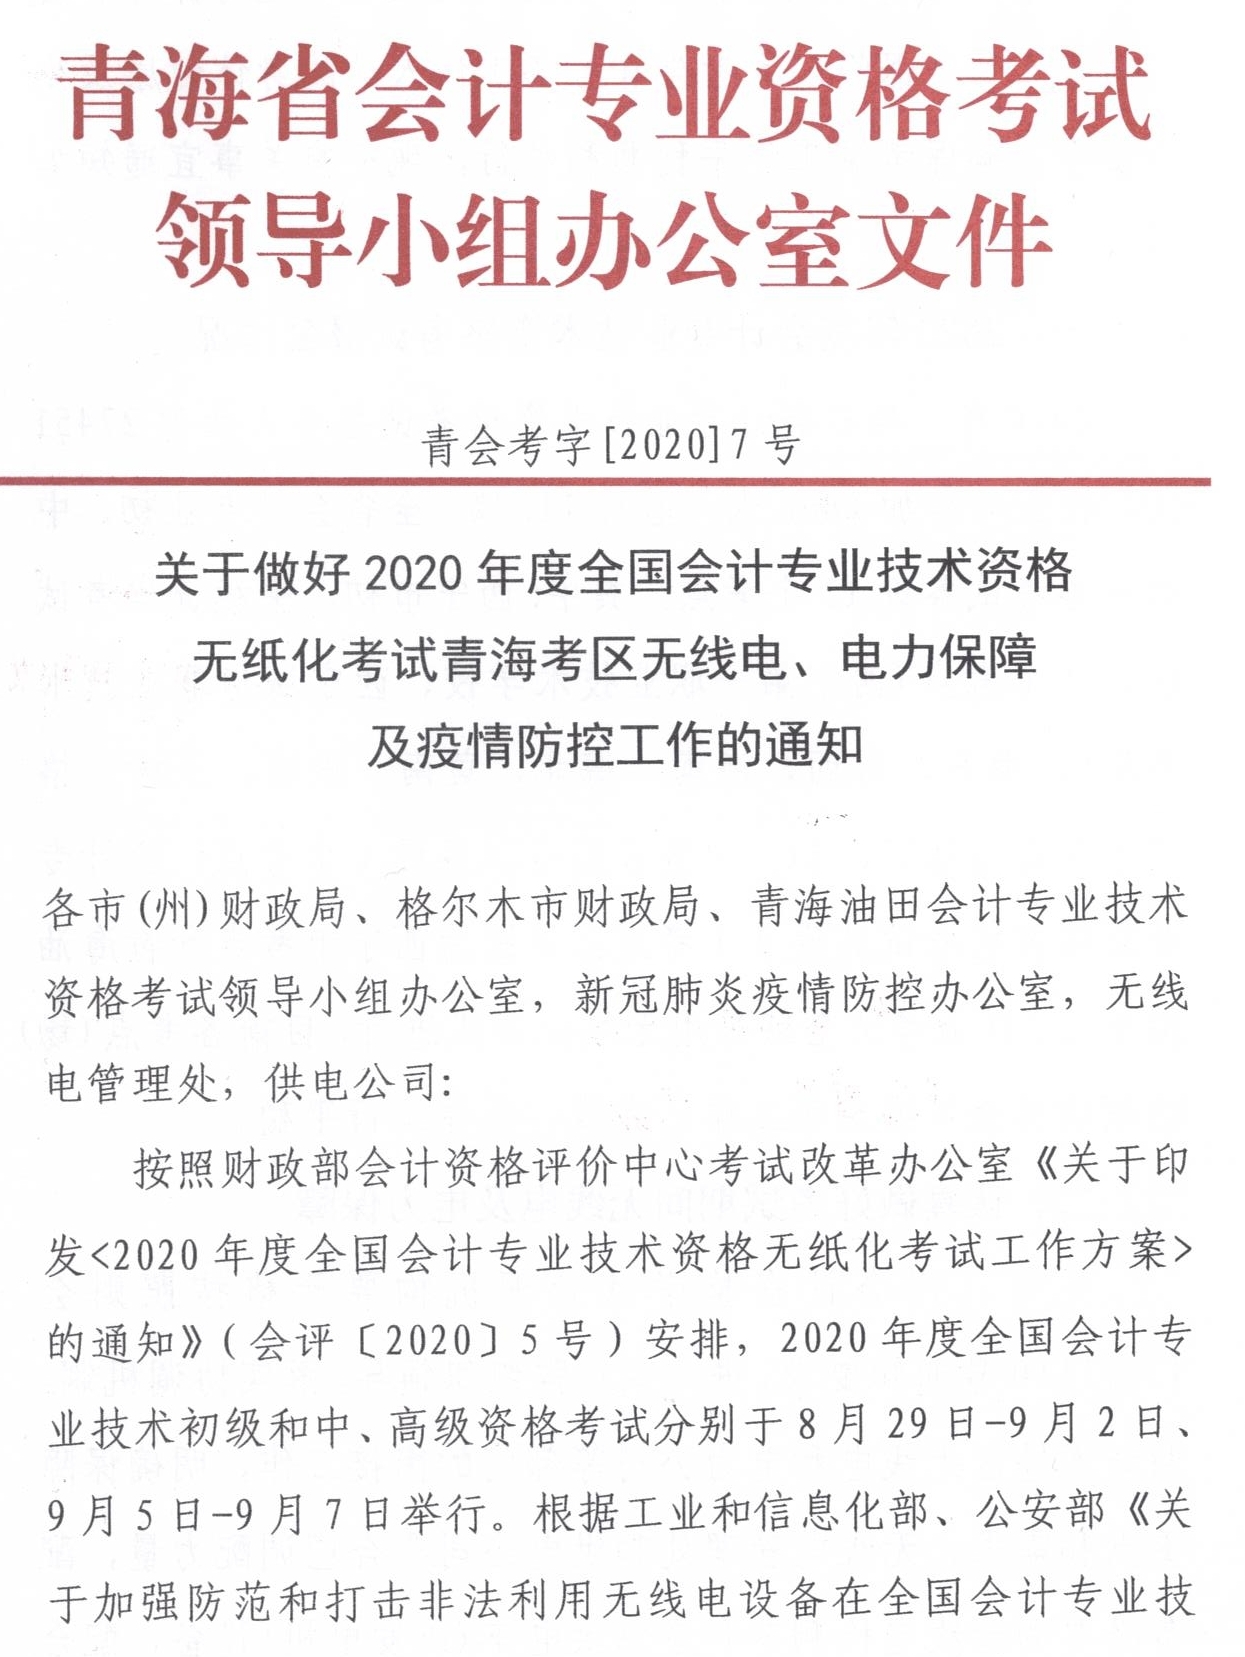 青海发布2020中级会计职称无纸化考试方式电力保障工作通知